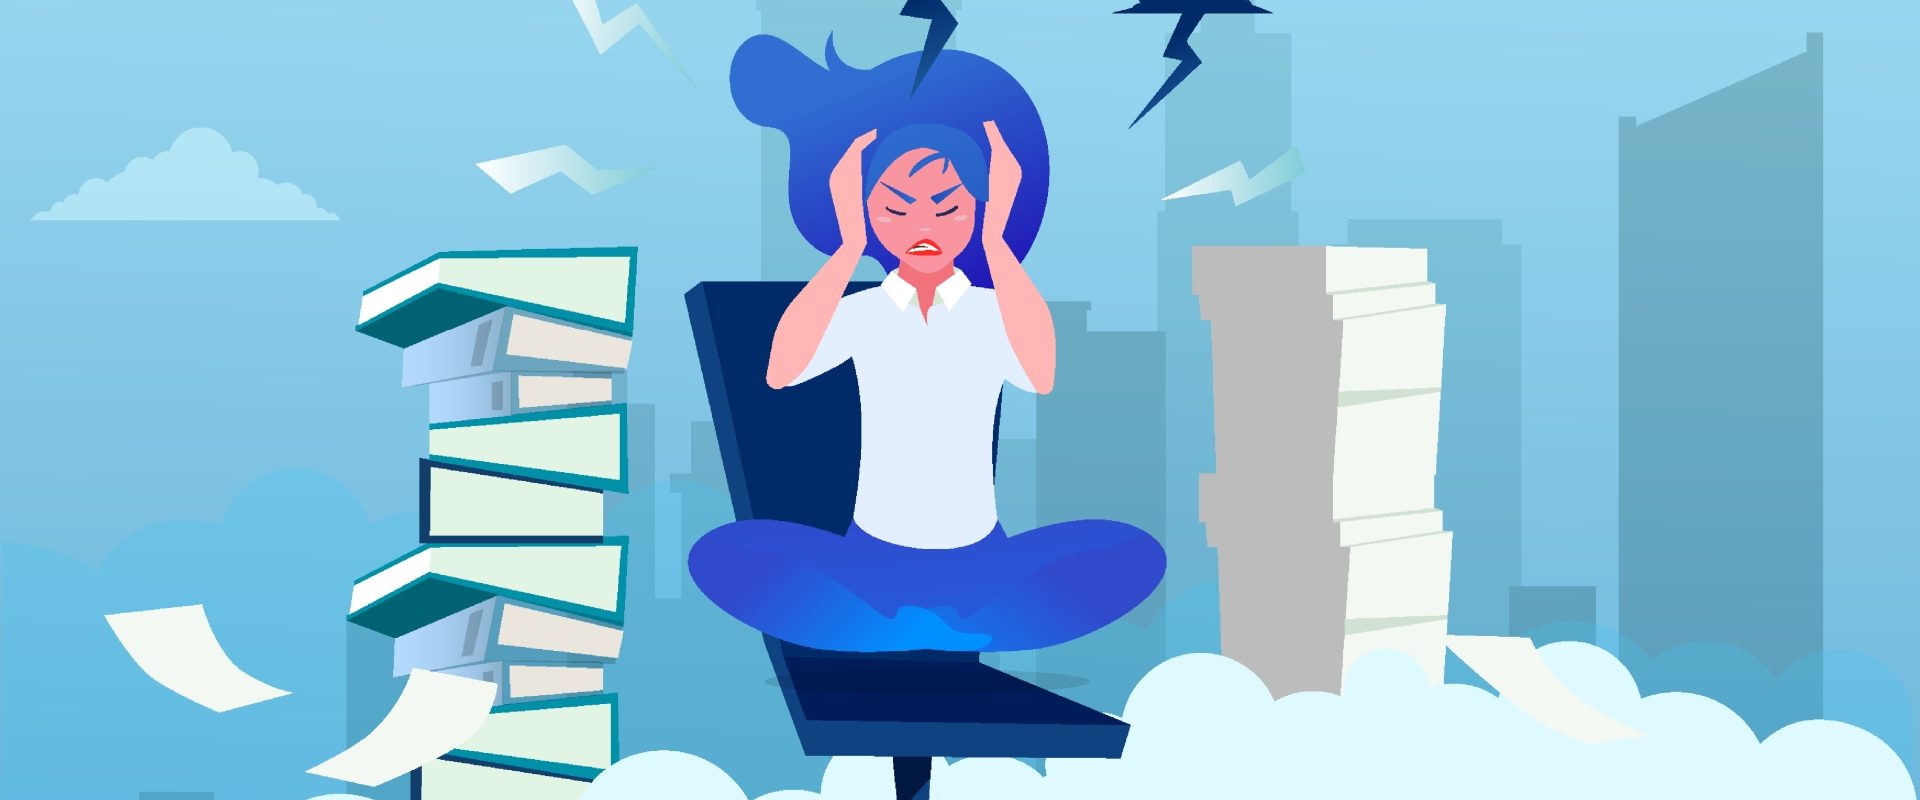 Stres - jakie są jego przyczyny, objawy i skutki? Jak radzić sobie ze stresem? Ilustracja przedstawiająca kobietę siedzącą na biurowym krześle wokół wieżowców i chmur z błyskawicami.